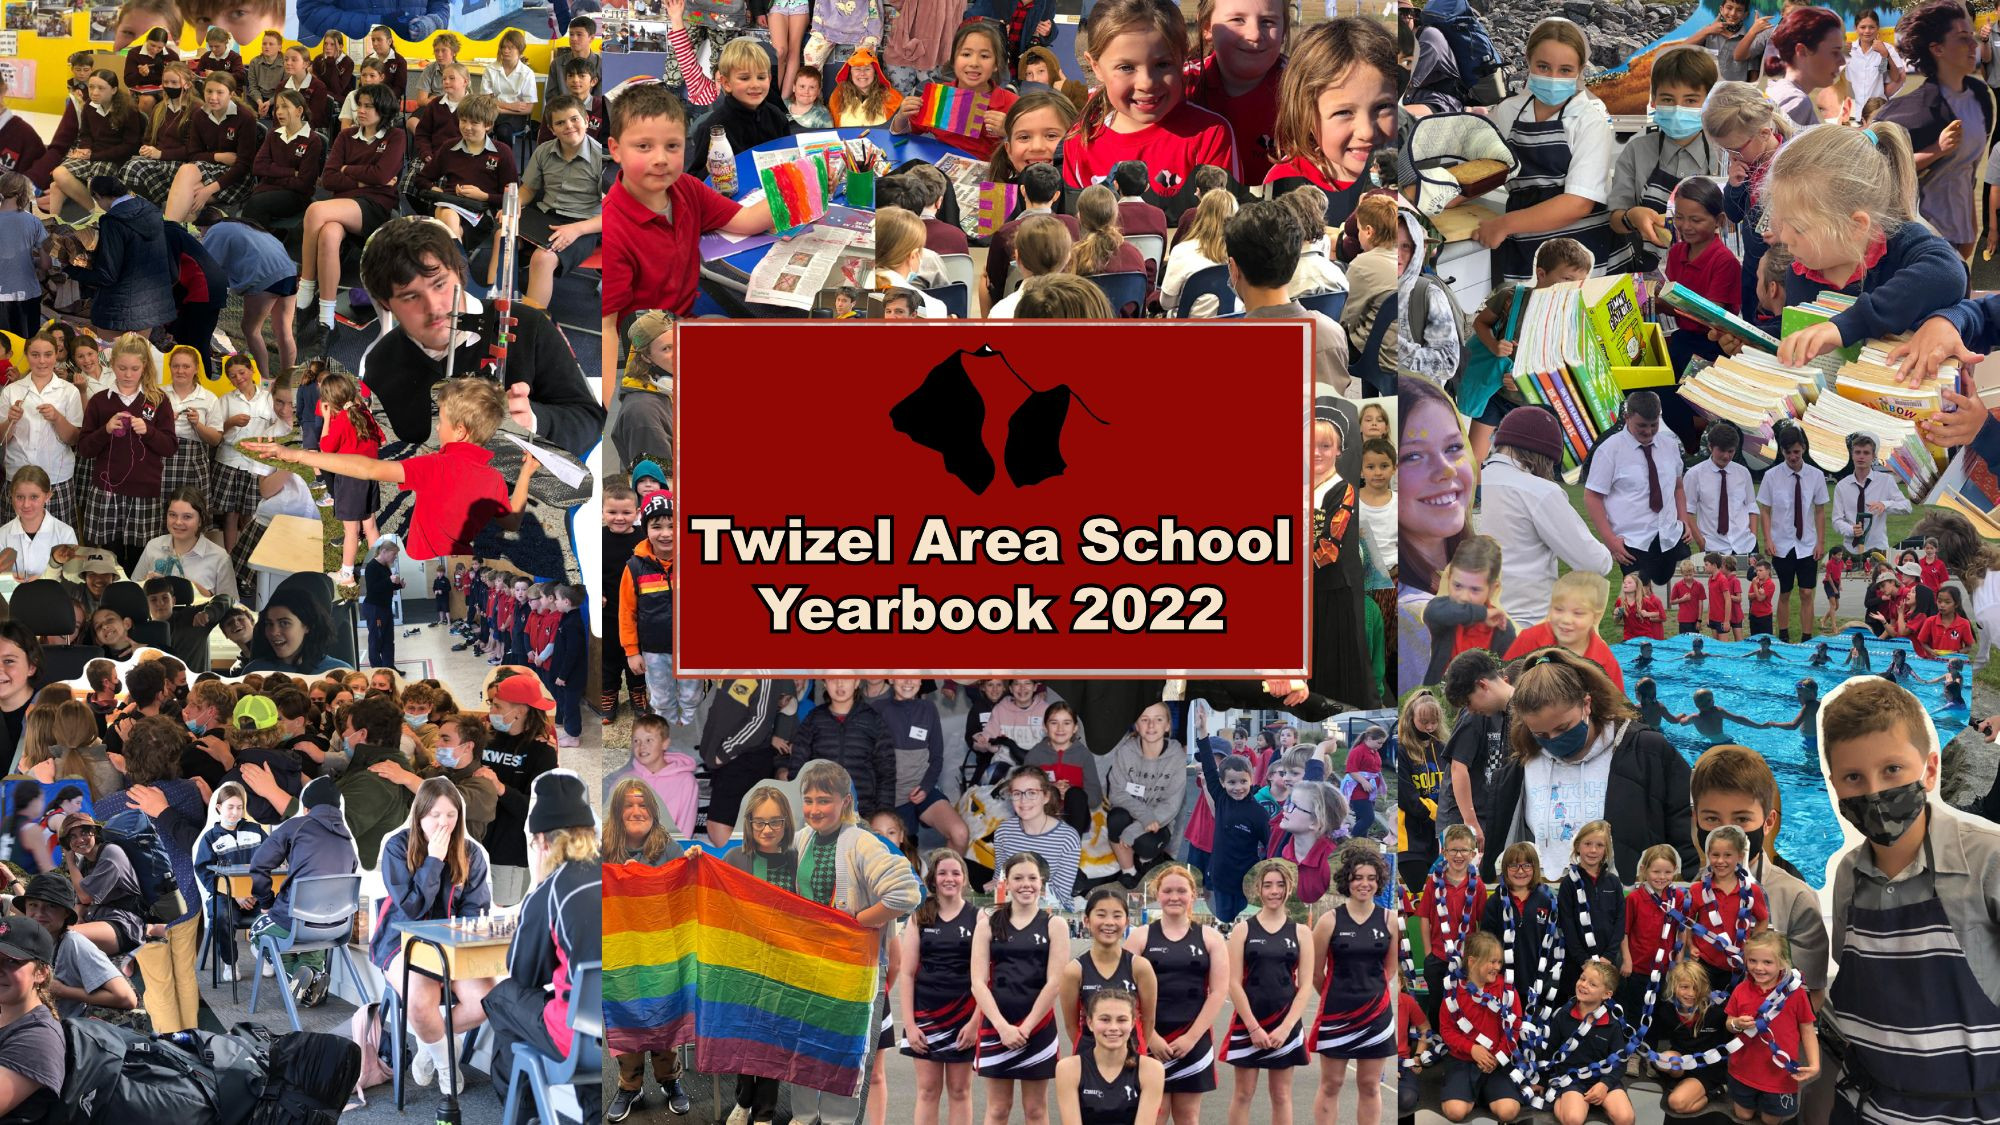 Twizel Area School Yearbook 2022